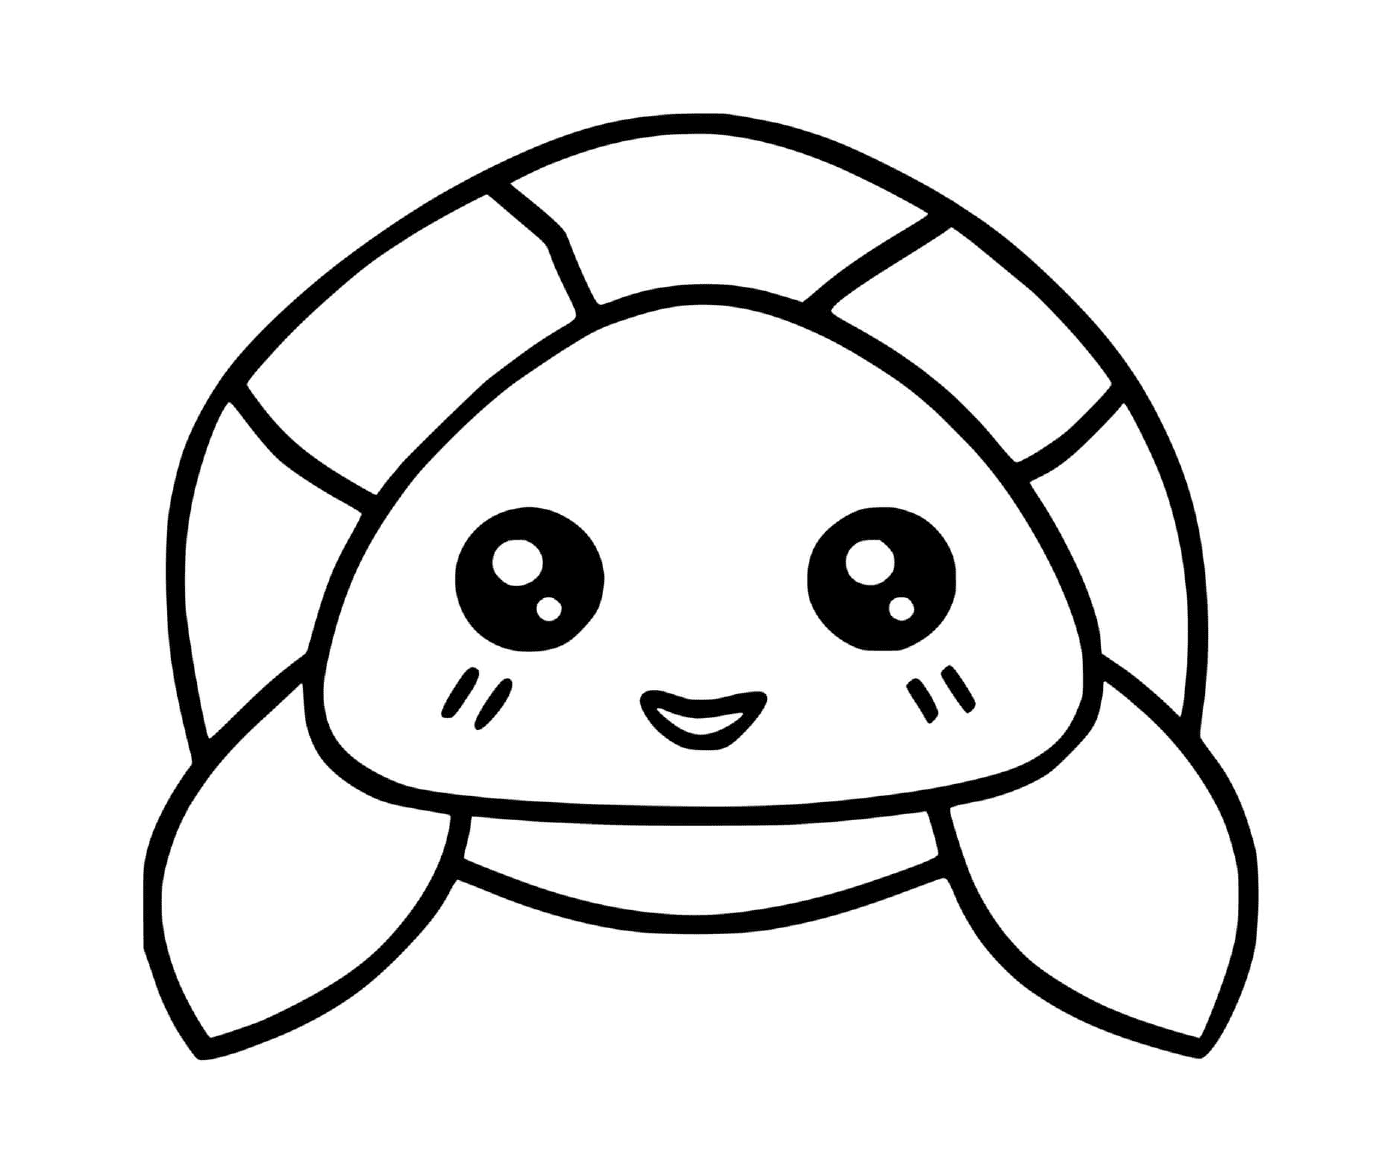  tartaruga animal marinho kawaii 